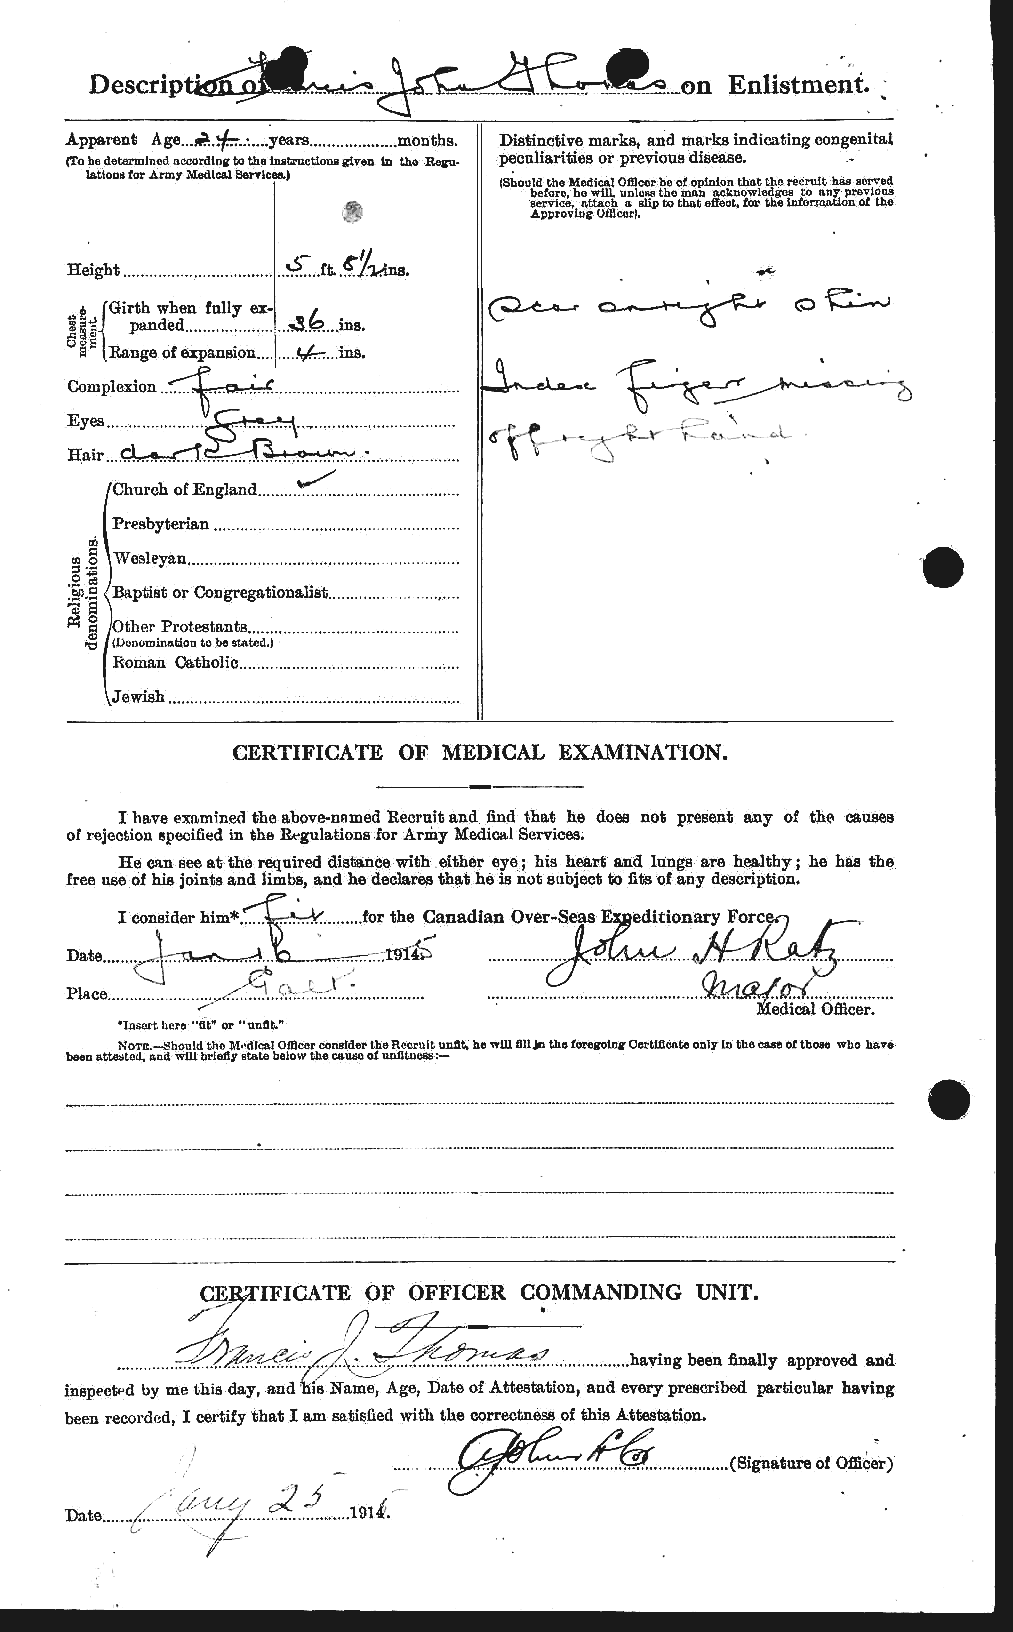 Dossiers du Personnel de la Première Guerre mondiale - CEC 631582b